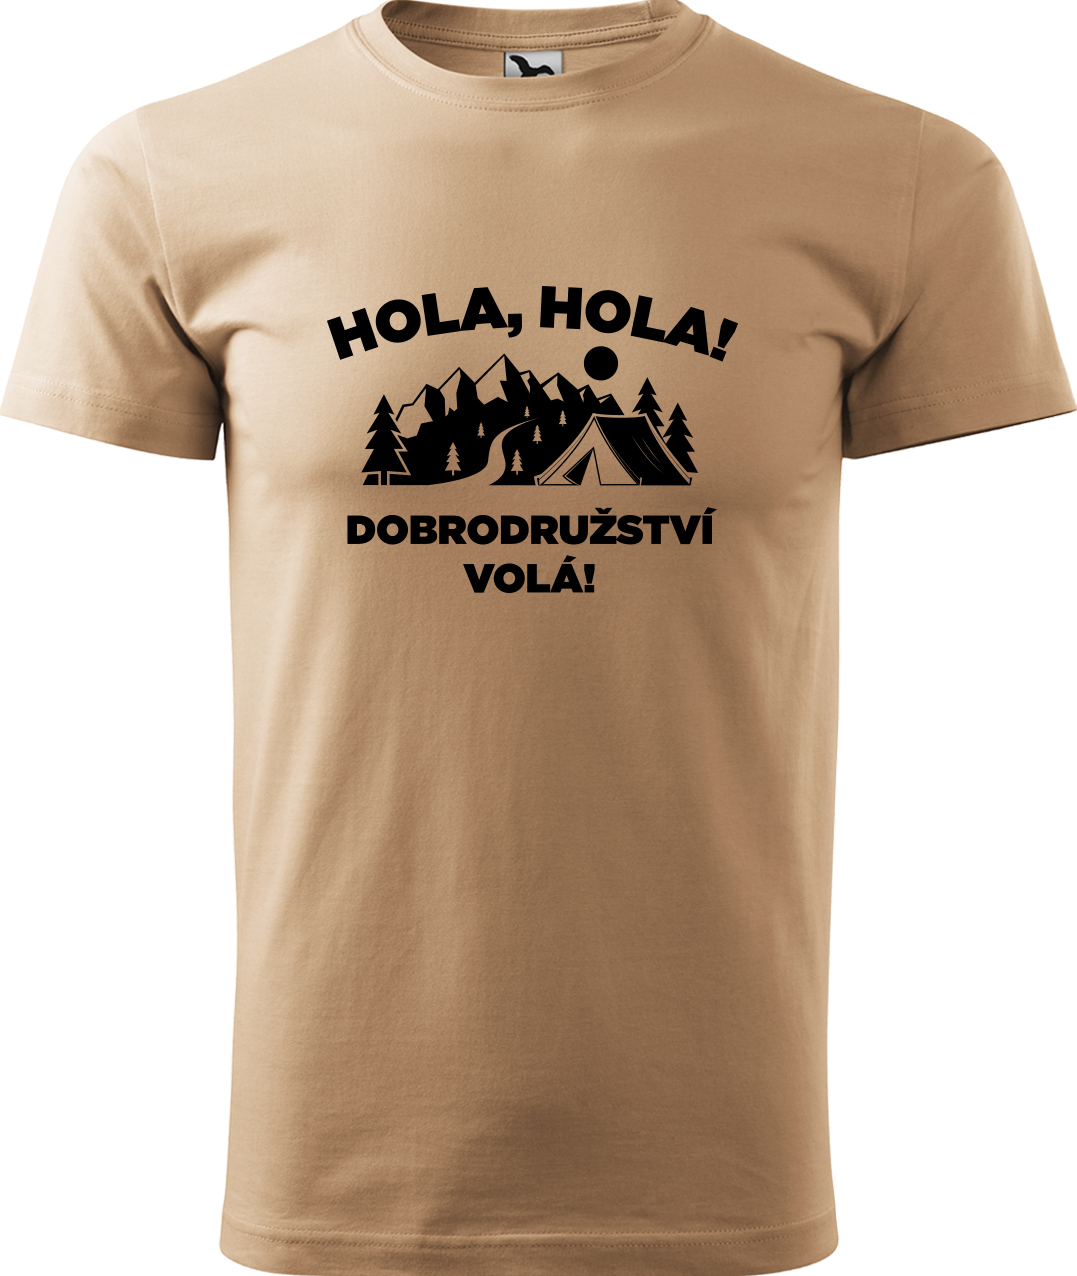 Pánské cestovatelské tričko - Hola hola! Dobrodružství volá! Velikost: XL, Barva: Písková (08), Střih: pánský